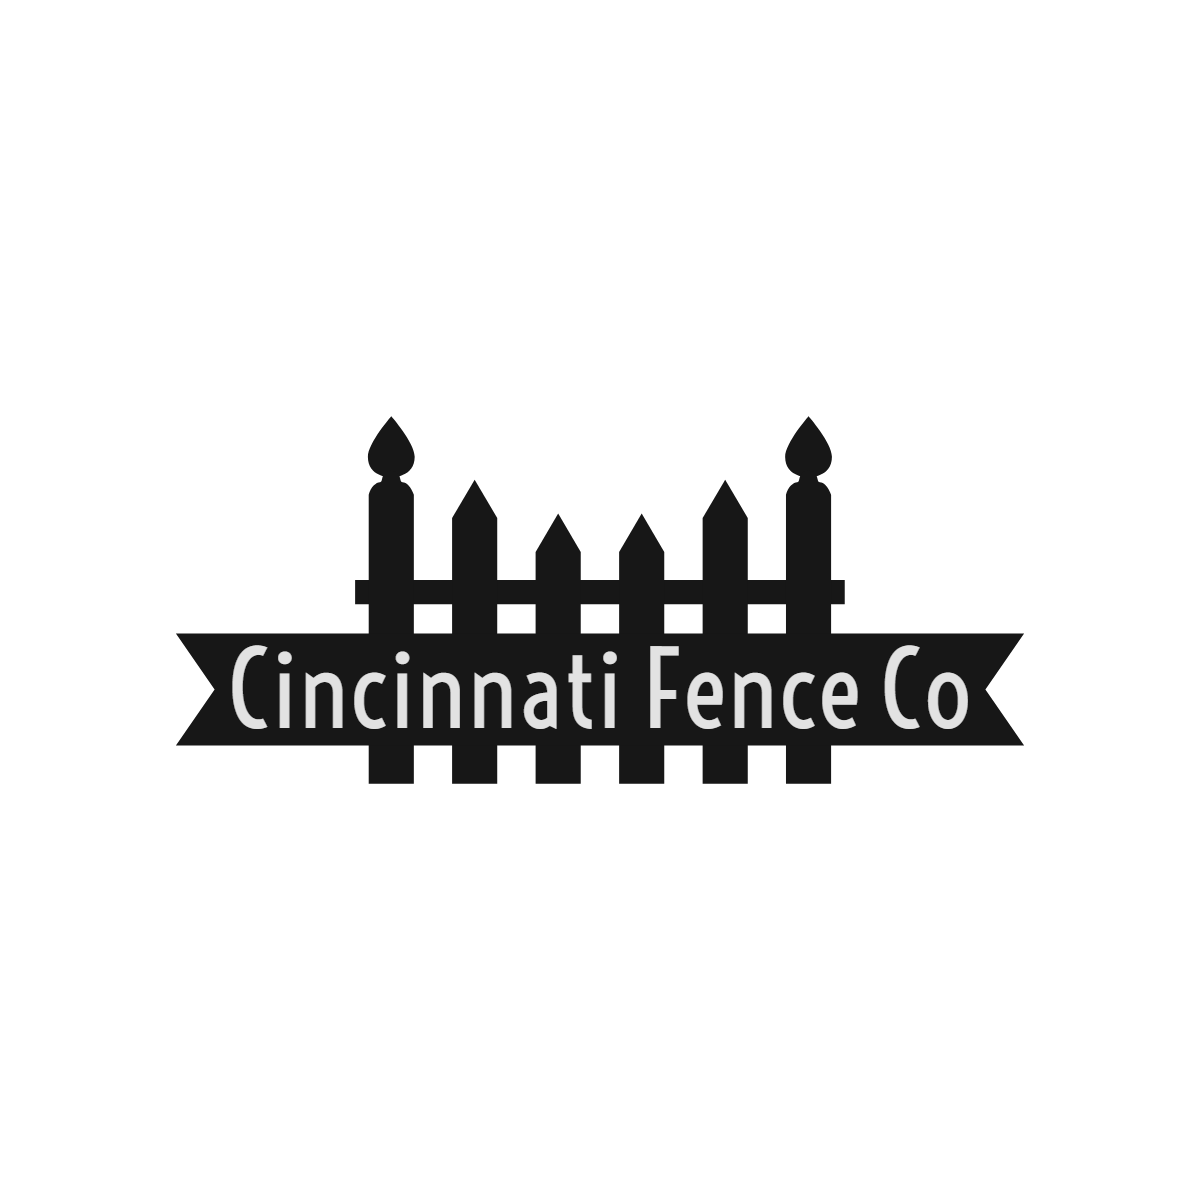 Cincinnati Fence Company